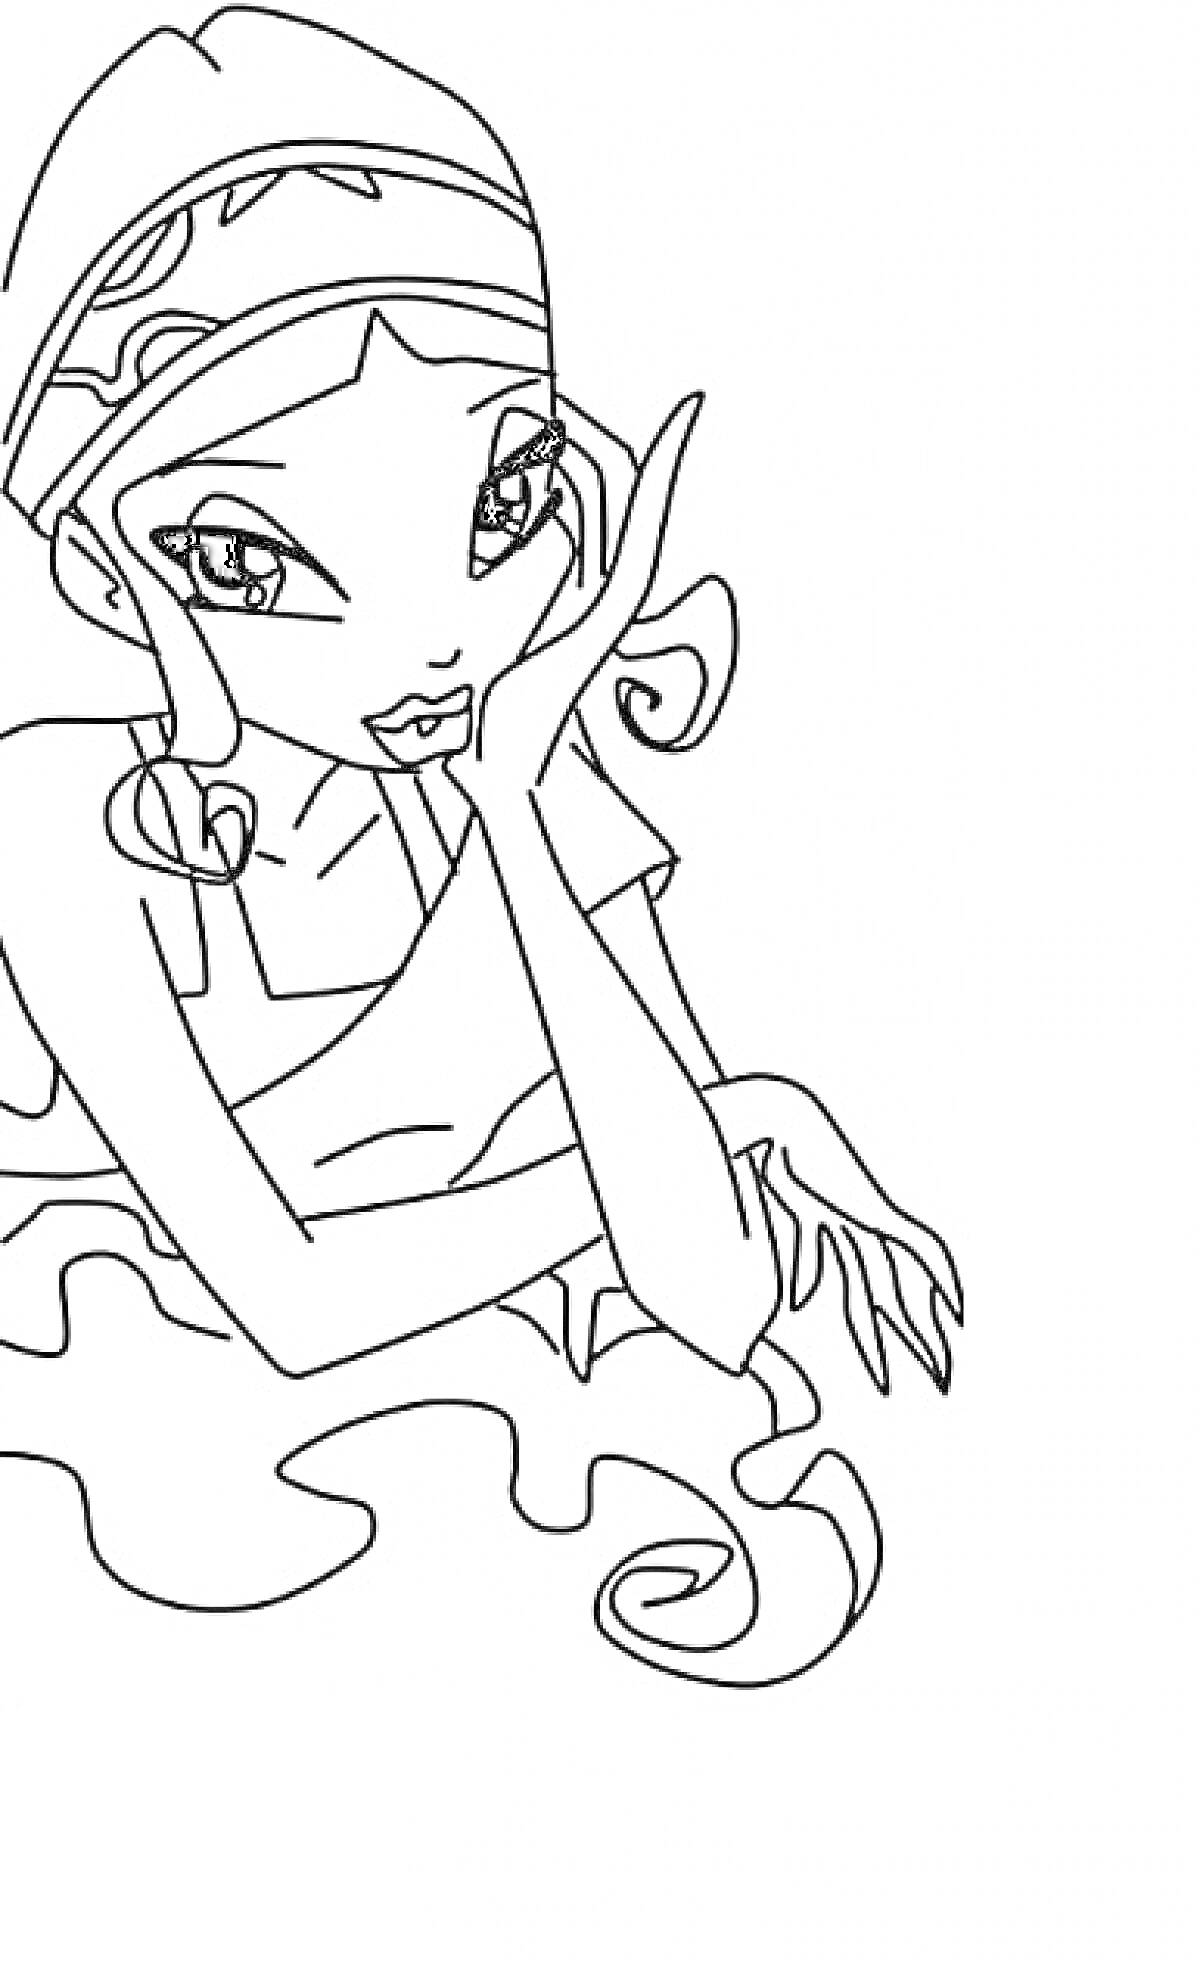 Раскраска Лейла из Винкс с повязкой на голове и волнистыми волосами, опирающаяся на ладонь